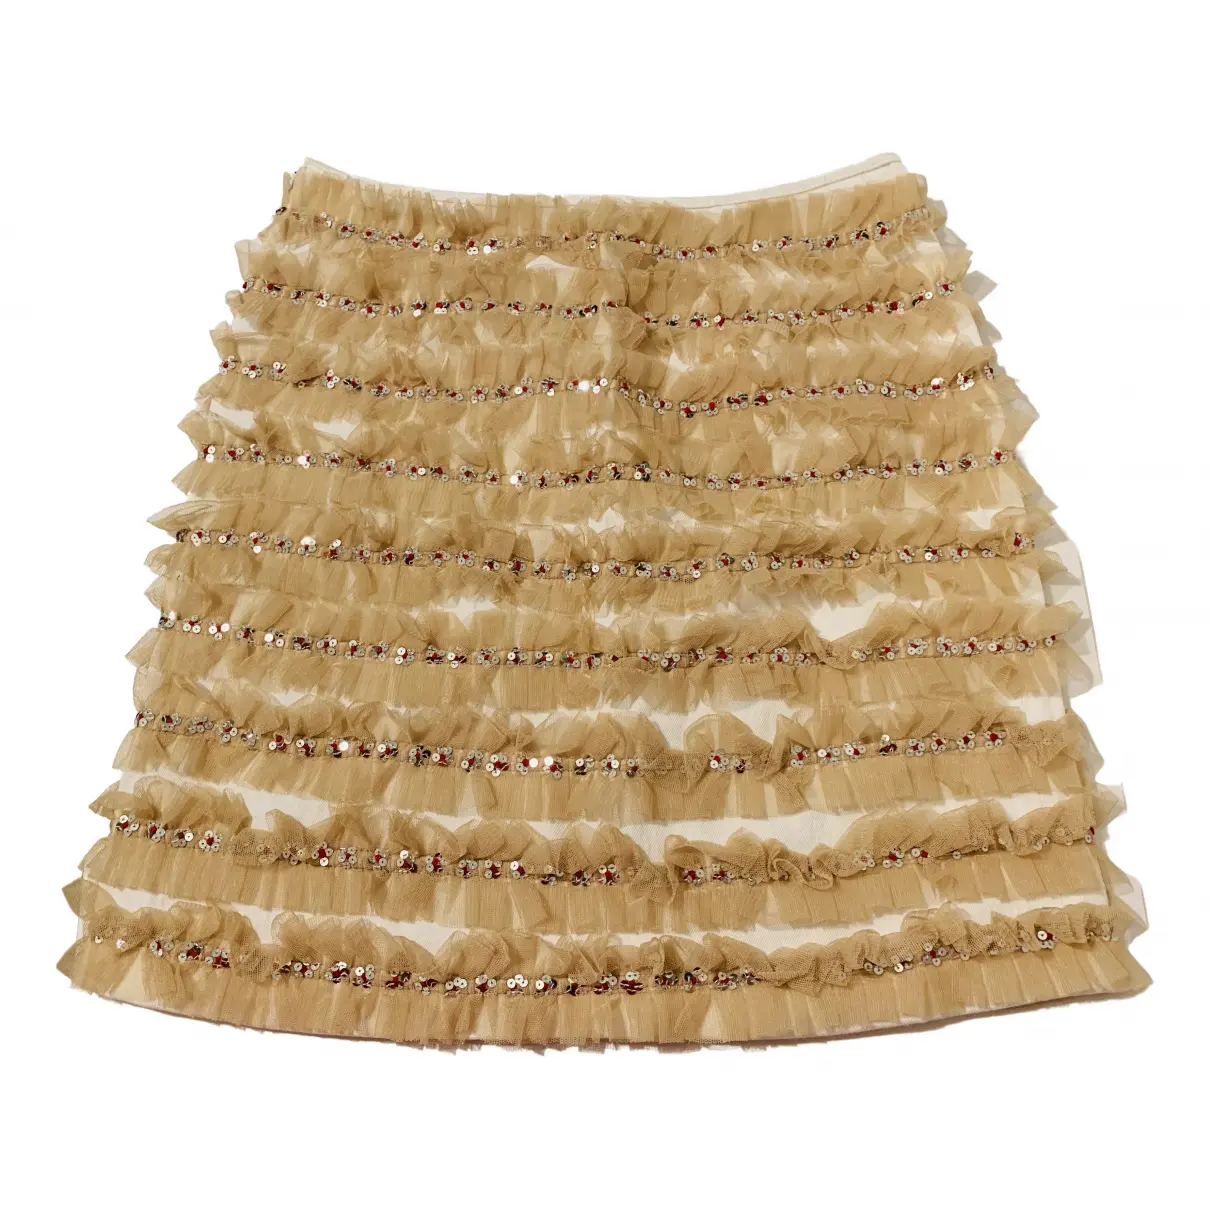 Mini skirt Versus - Vintage